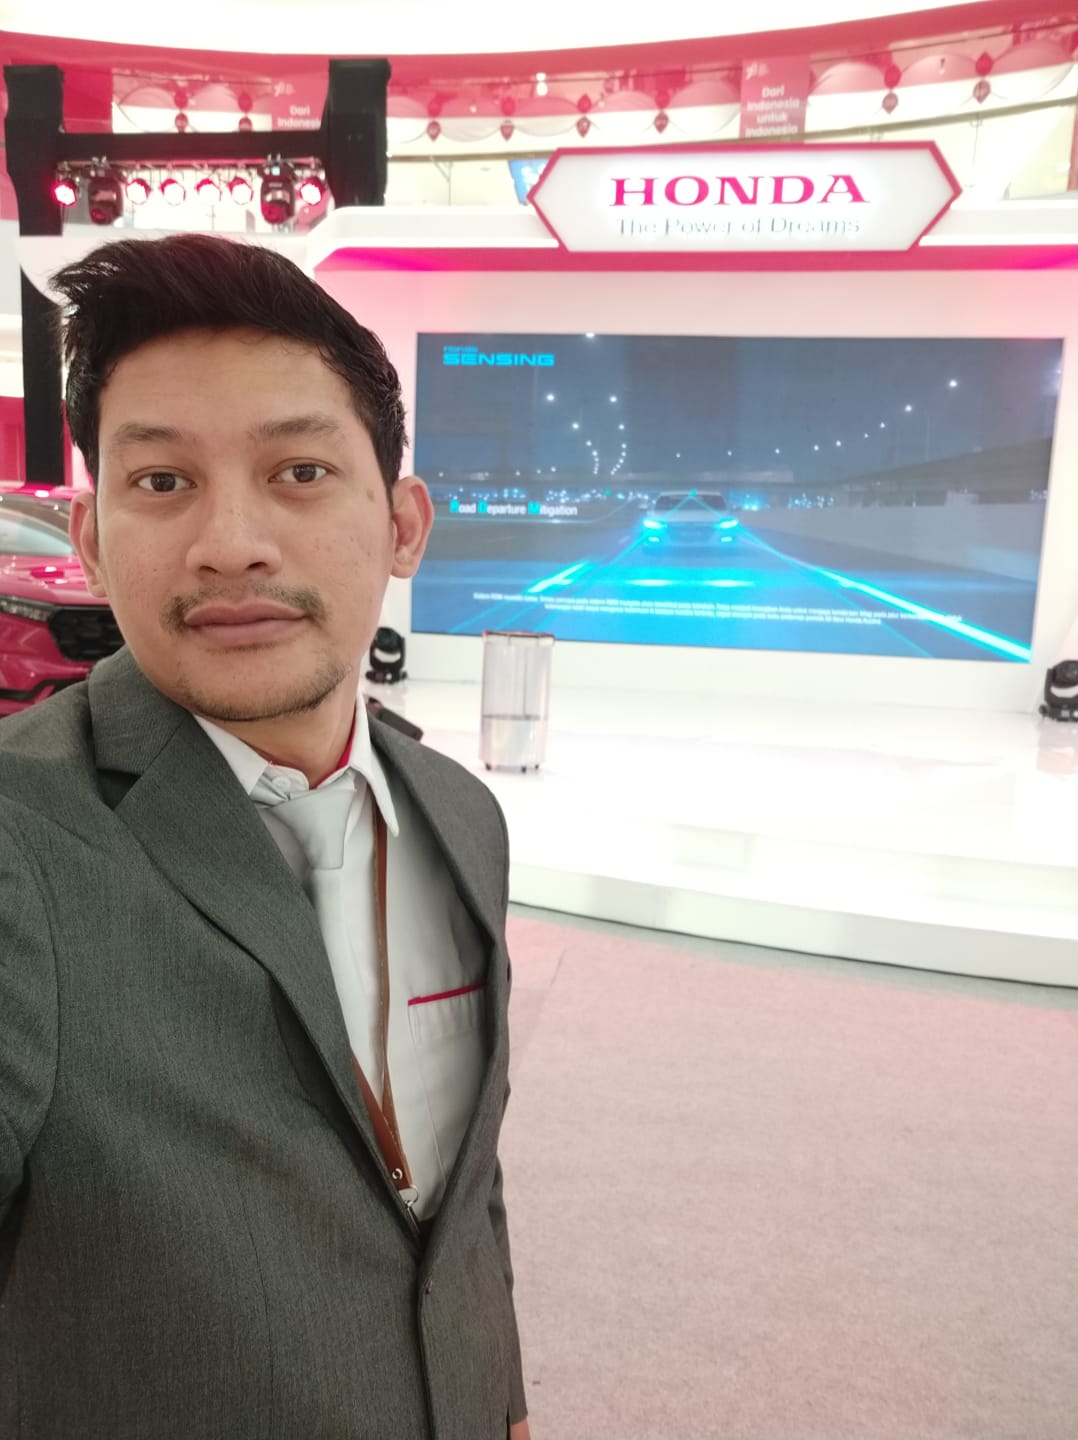 SALES Honda Semarang